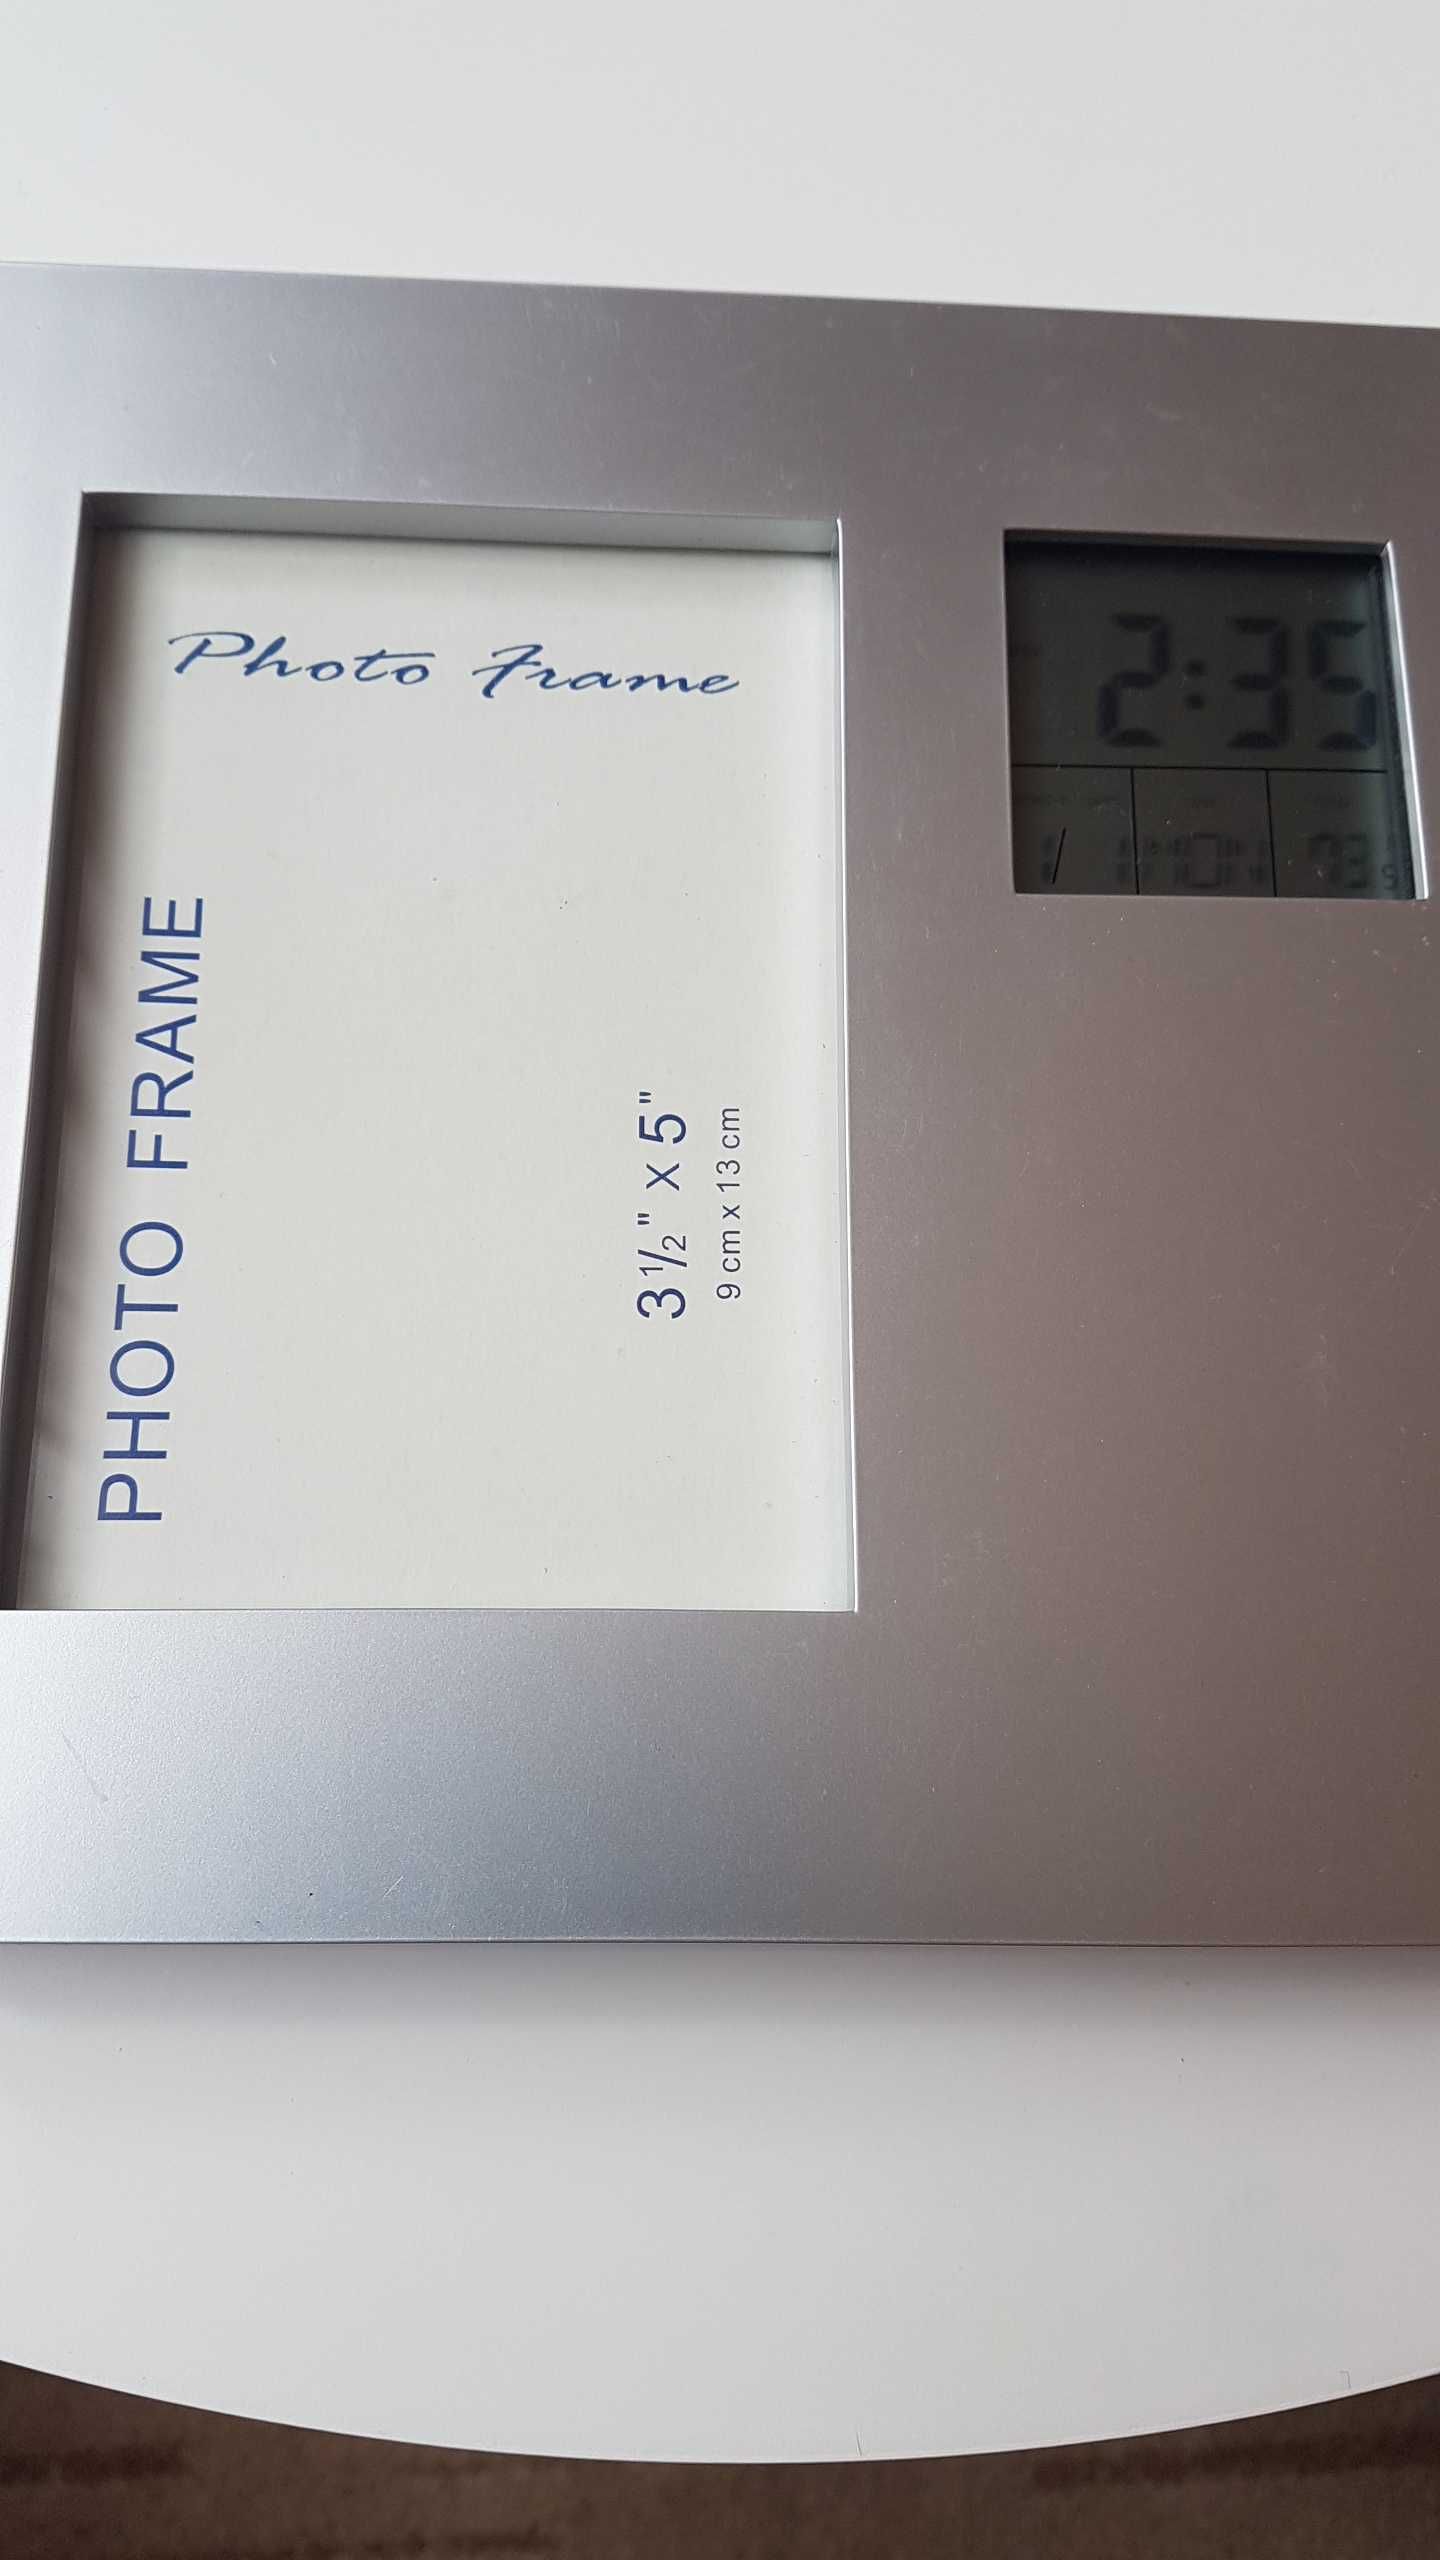 Ramka stojąca na zdjęcie z zegarem, datą i temperaturą